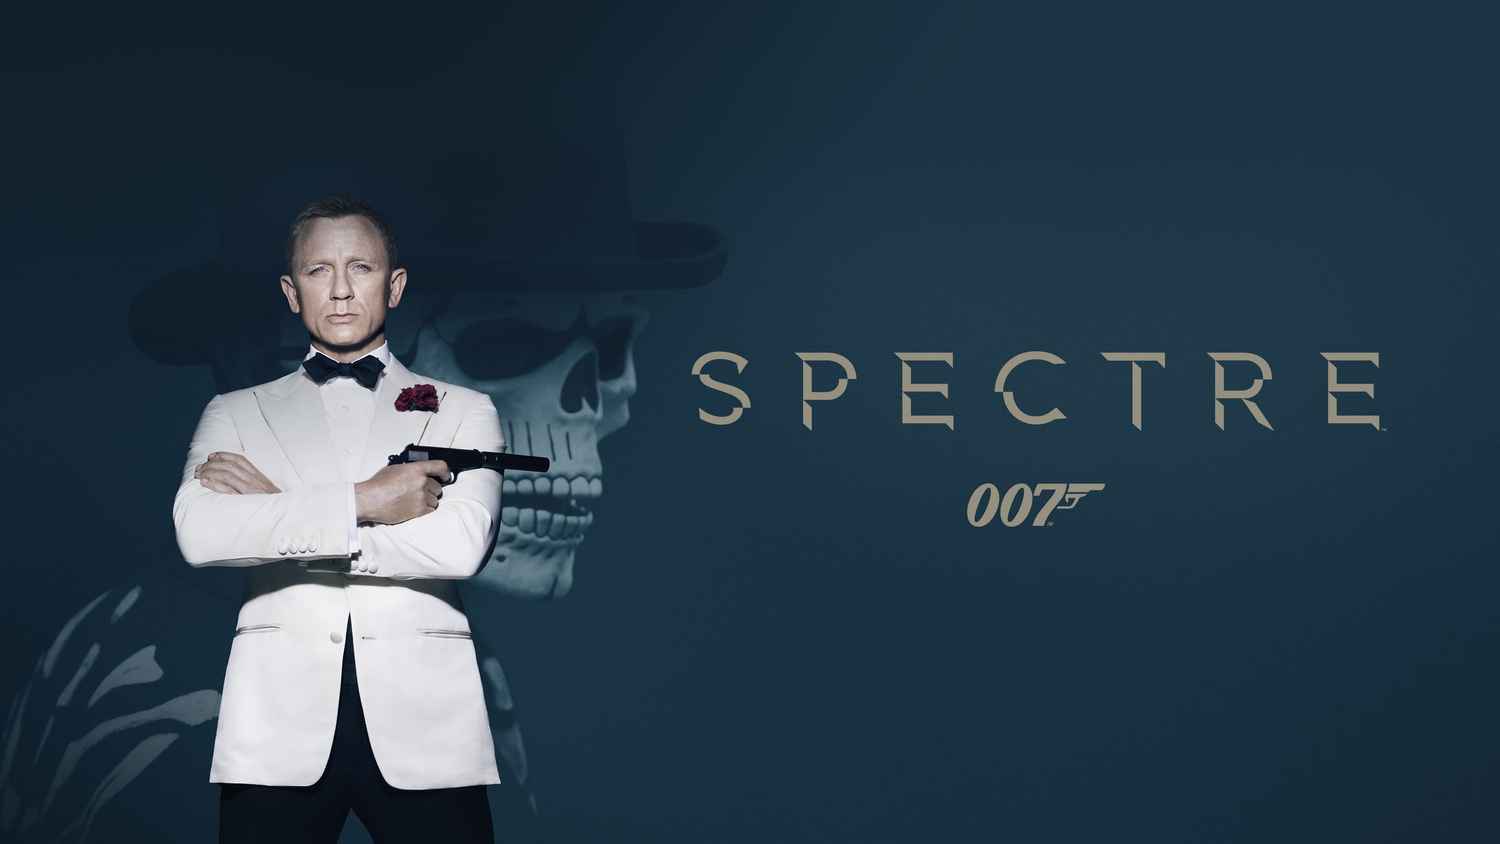 007 spectre full movie online